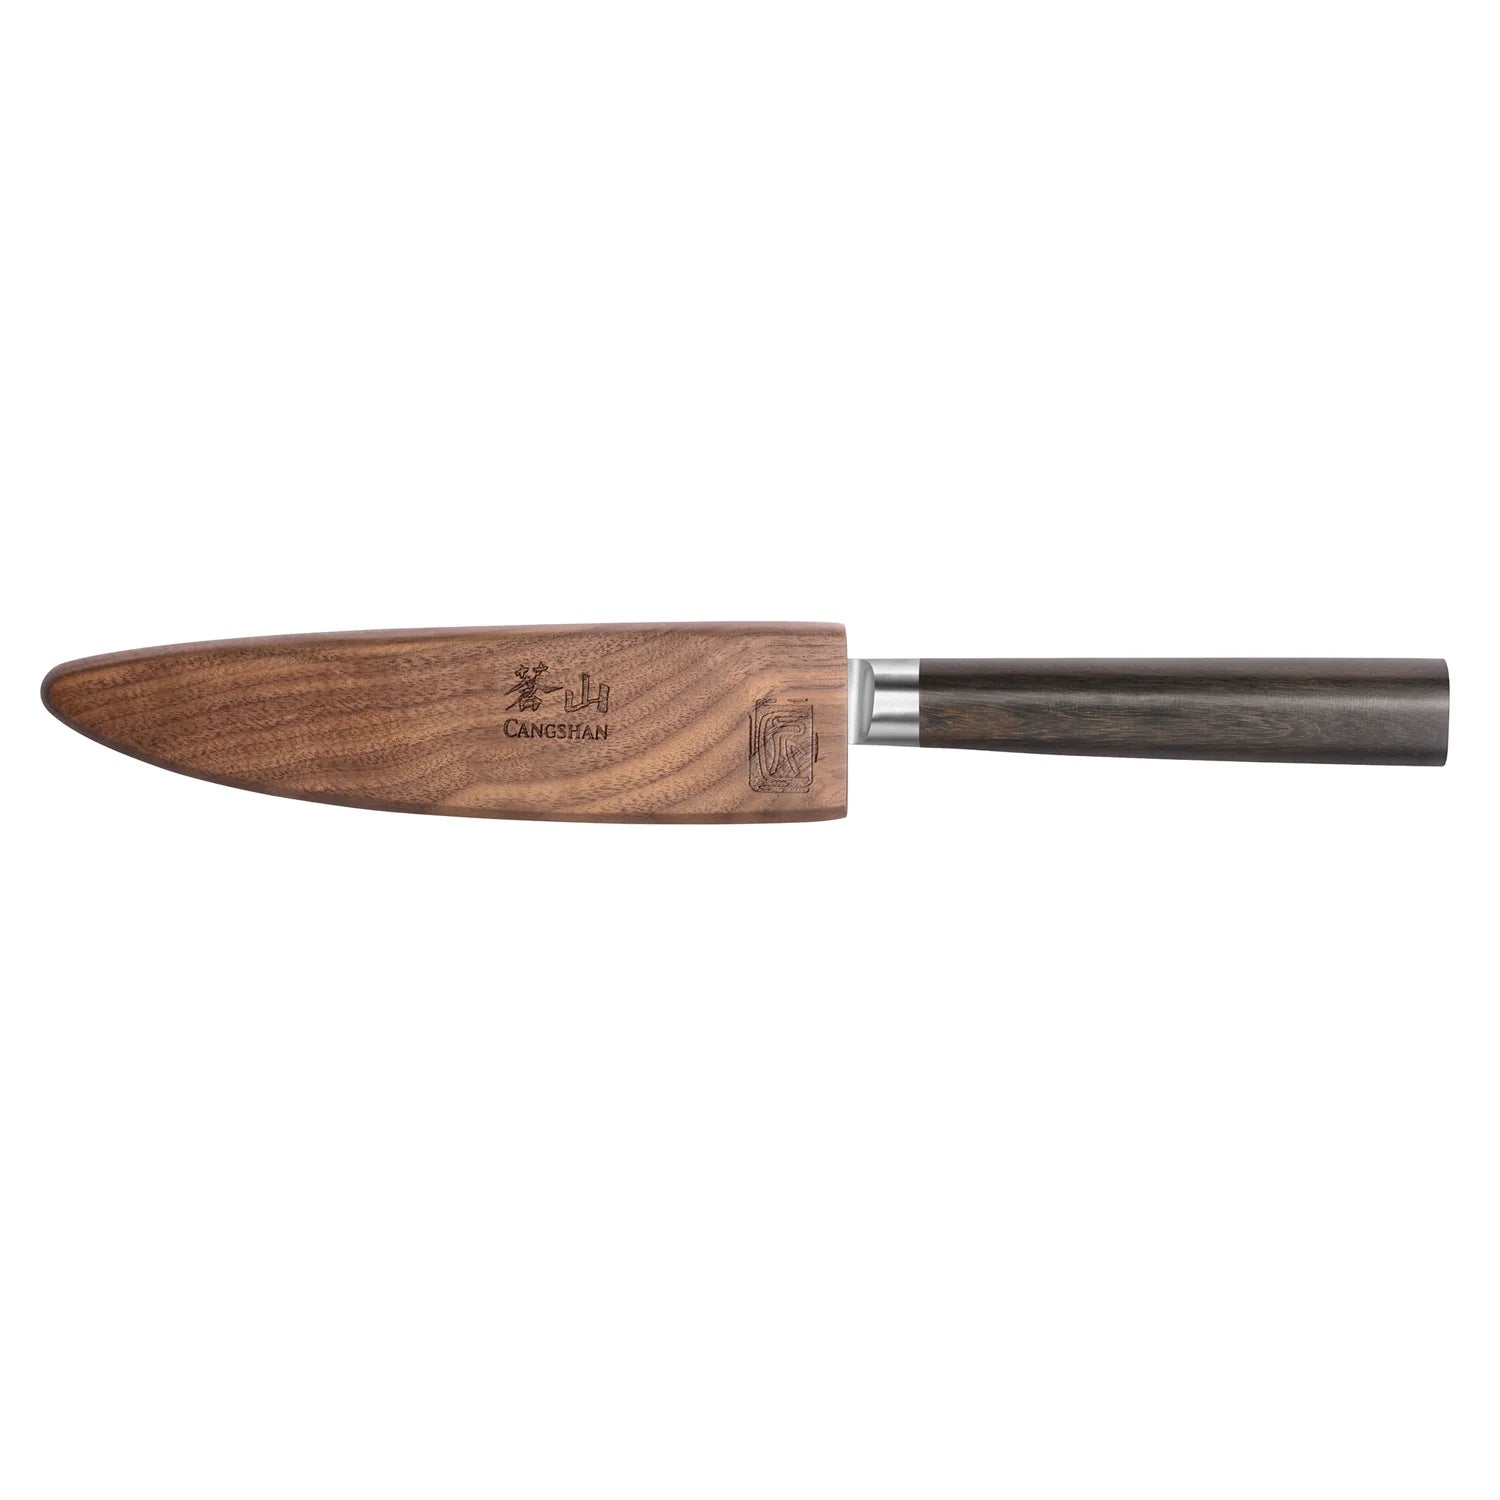 Cangshan Haku 5" Serrated Utility Knife w/ Sheath-2